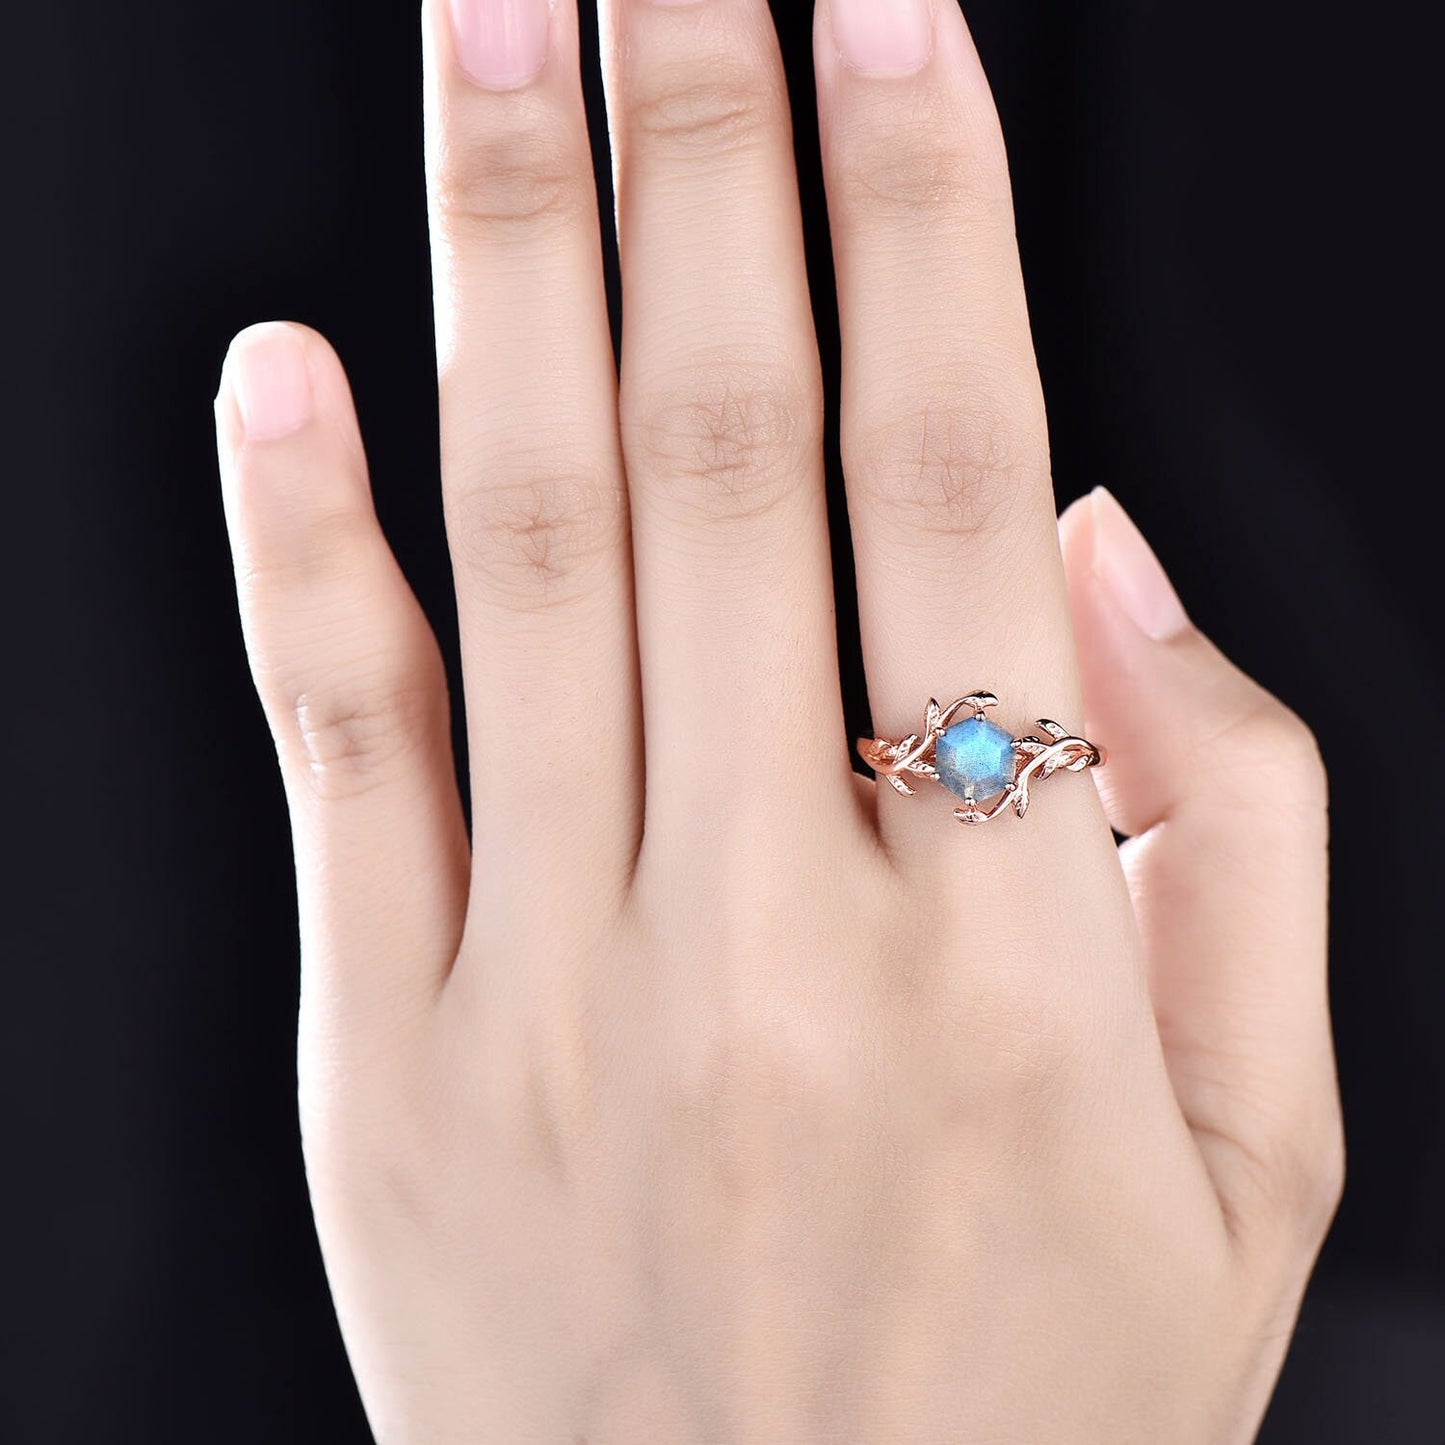 Vintage Hexagon Labradorite engagement ring leaf flower ring solitaire rose gold bridal ring blue Labradorite ring for women wedding ring